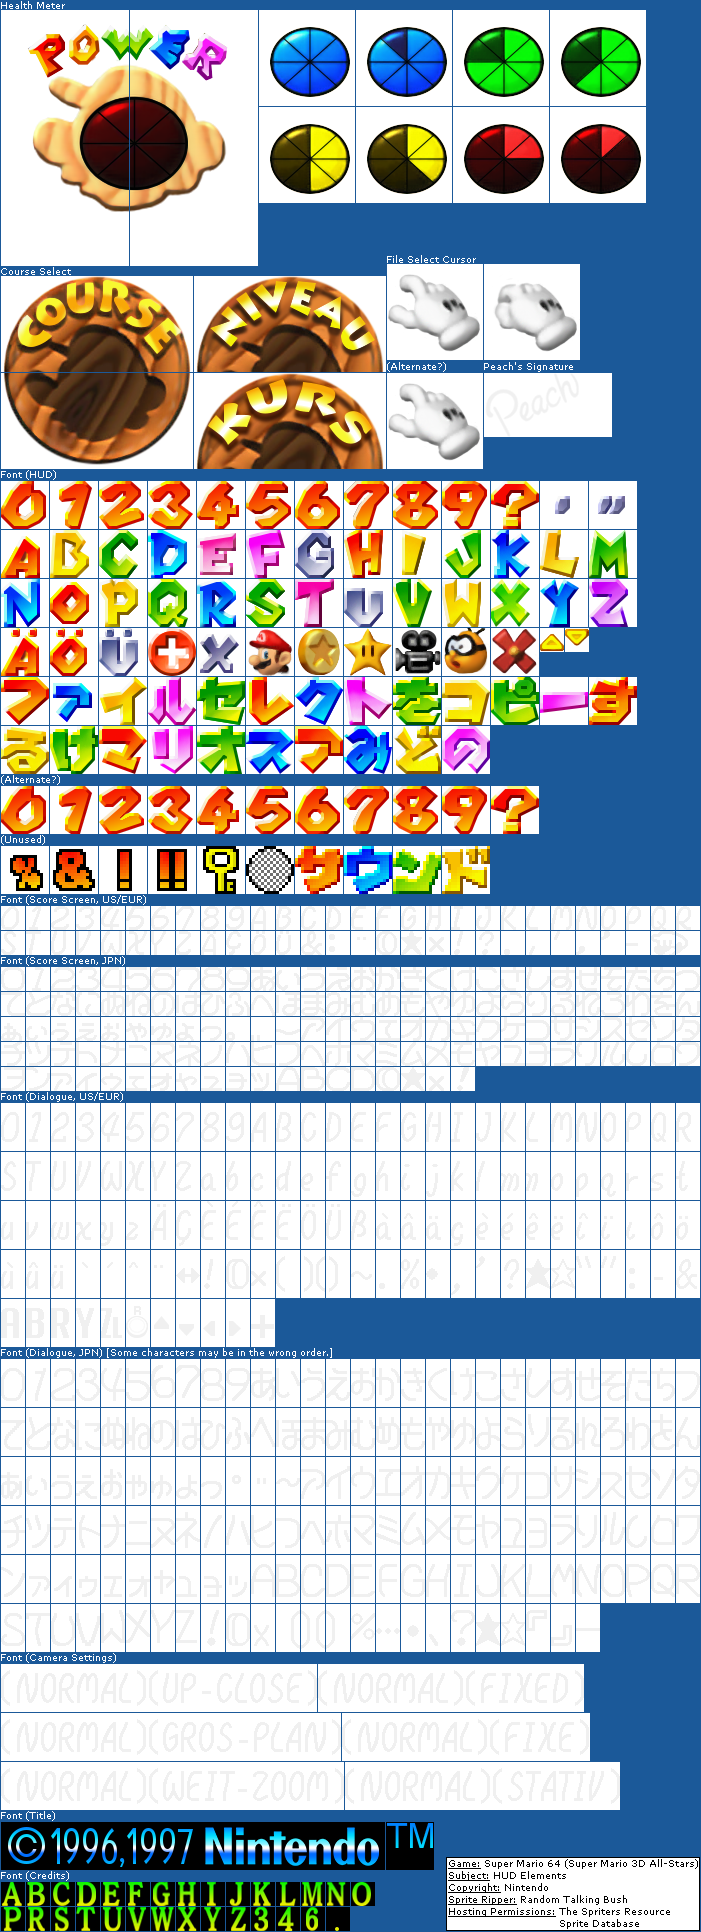 Super Mario 3D All-Stars Icon and File size : r/nintendo